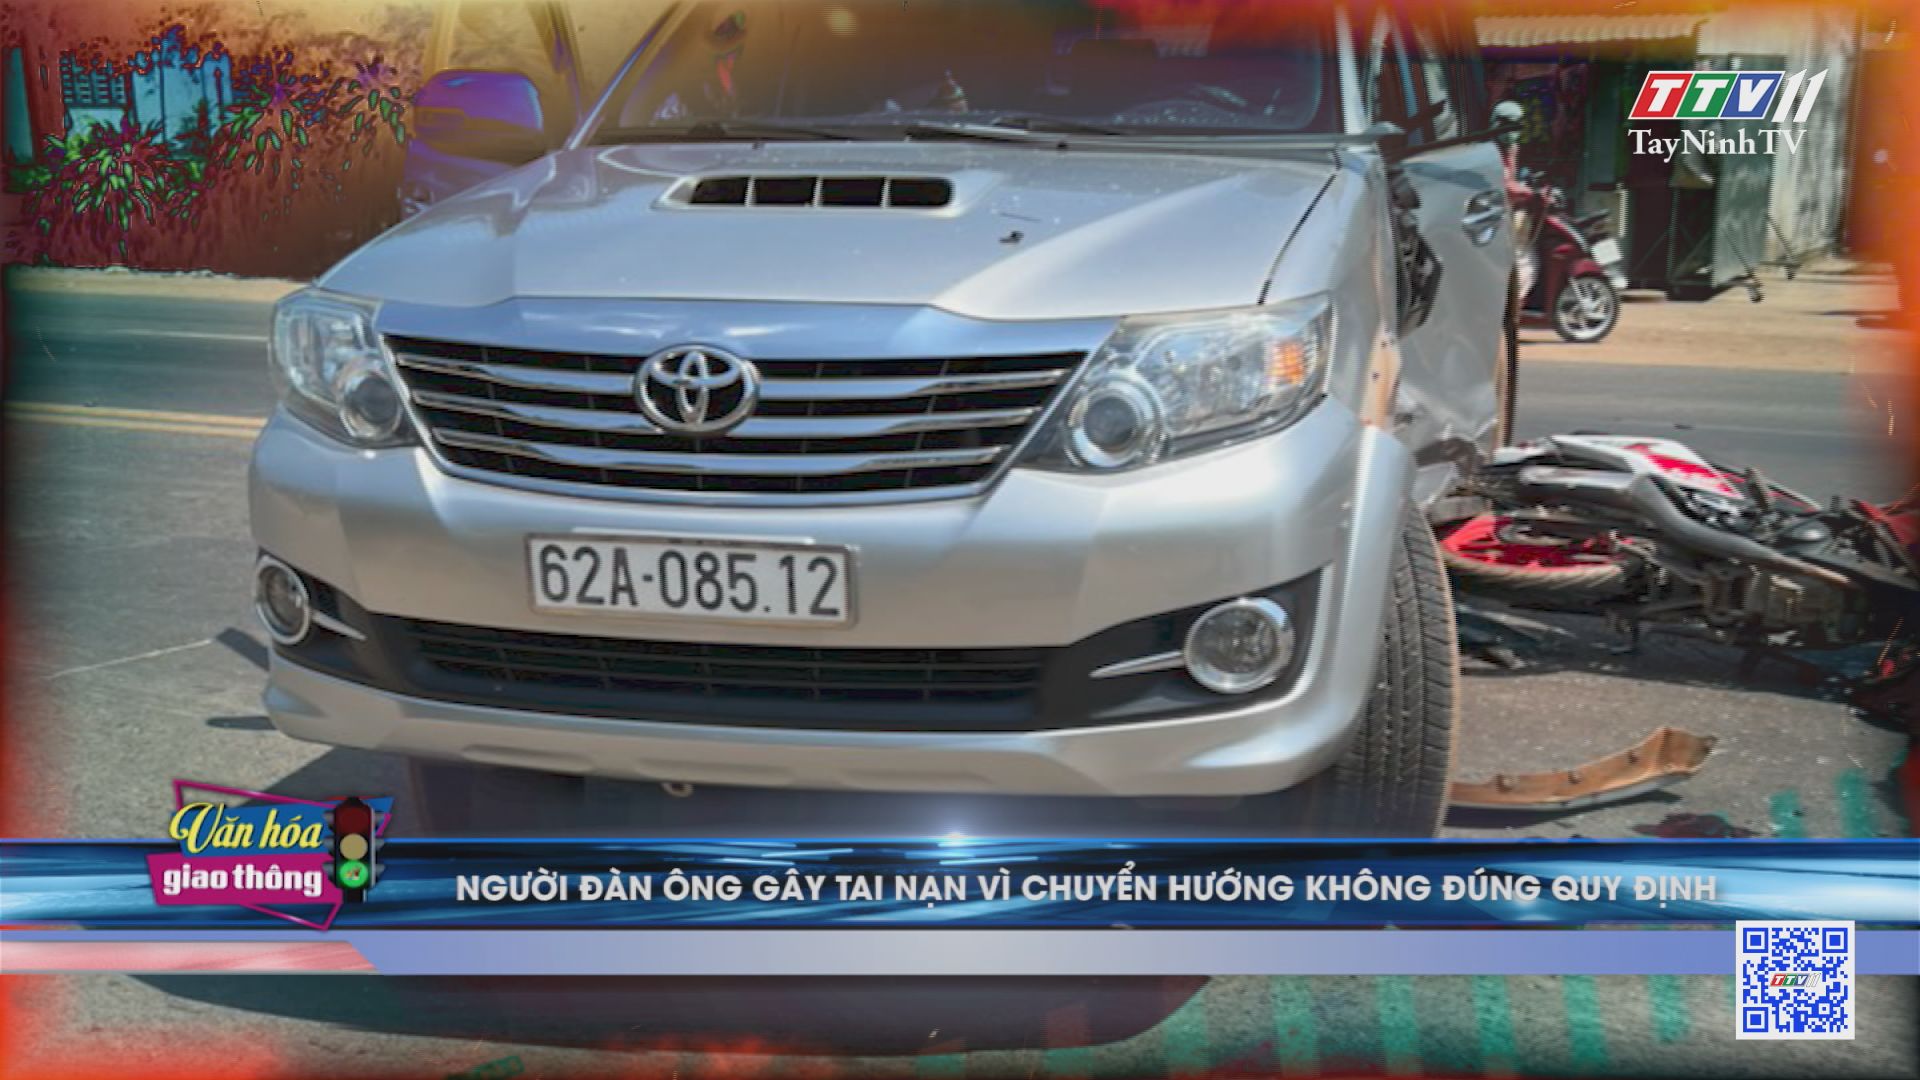 Người đàn ông gây tai nạn vì chuyển hướng không đúng quy định | Văn hóa giao thông | TayNinhTV